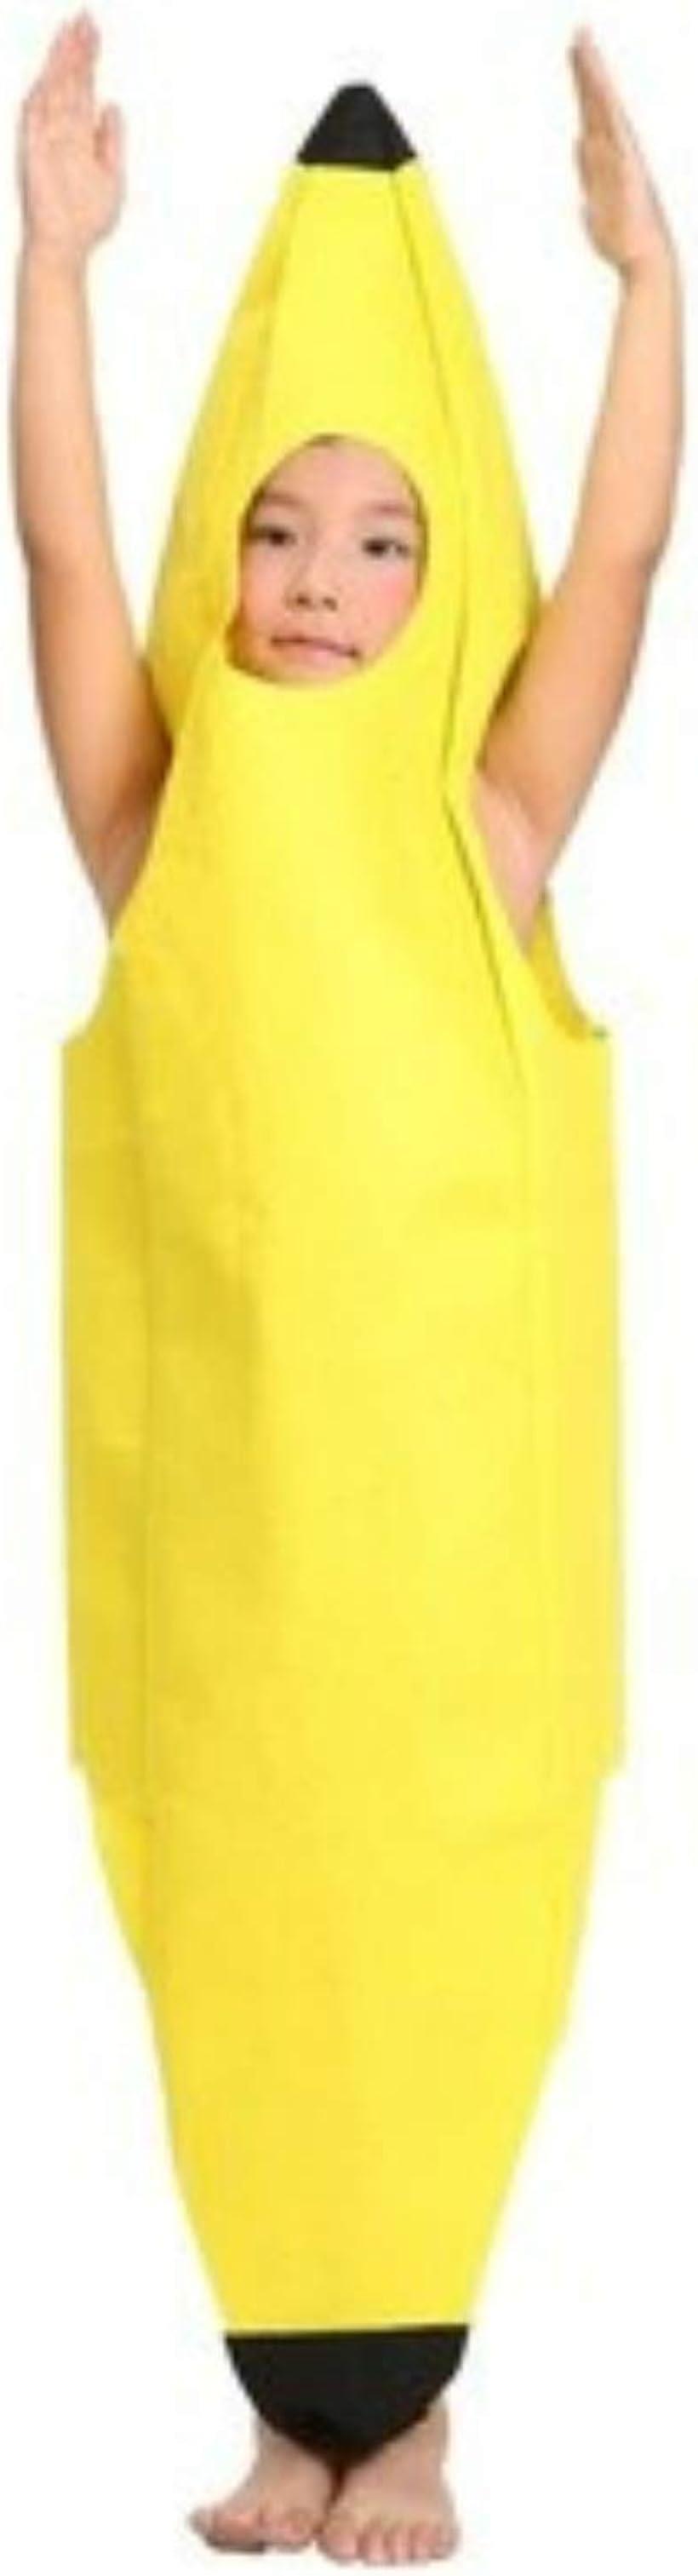 3サイズ [笑顔一番] コスプレ 全身 バナナ おもしろ コスチューム 衣装 ハロウィン 仮装 学園祭 フリーサイズ コスチューム 黄色 男女共用 子供用 [A273-09] 3 S 120-150 cm